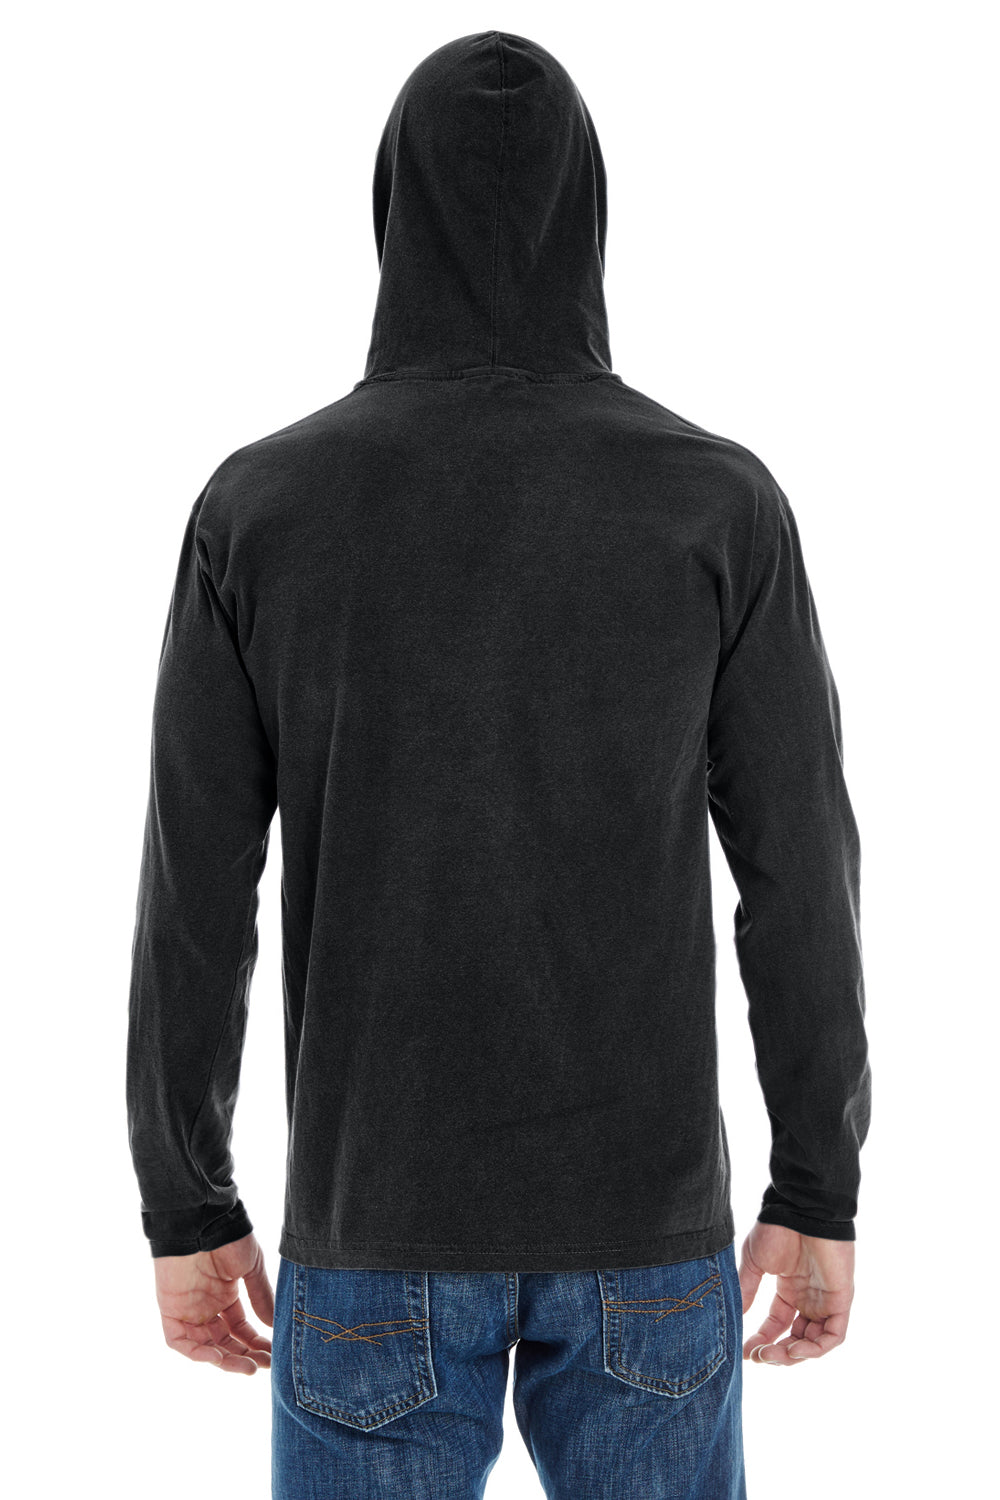 Comfort Colors 4900 Mens Long Sleeve Hooded T-Shirt Hoodie Black Back